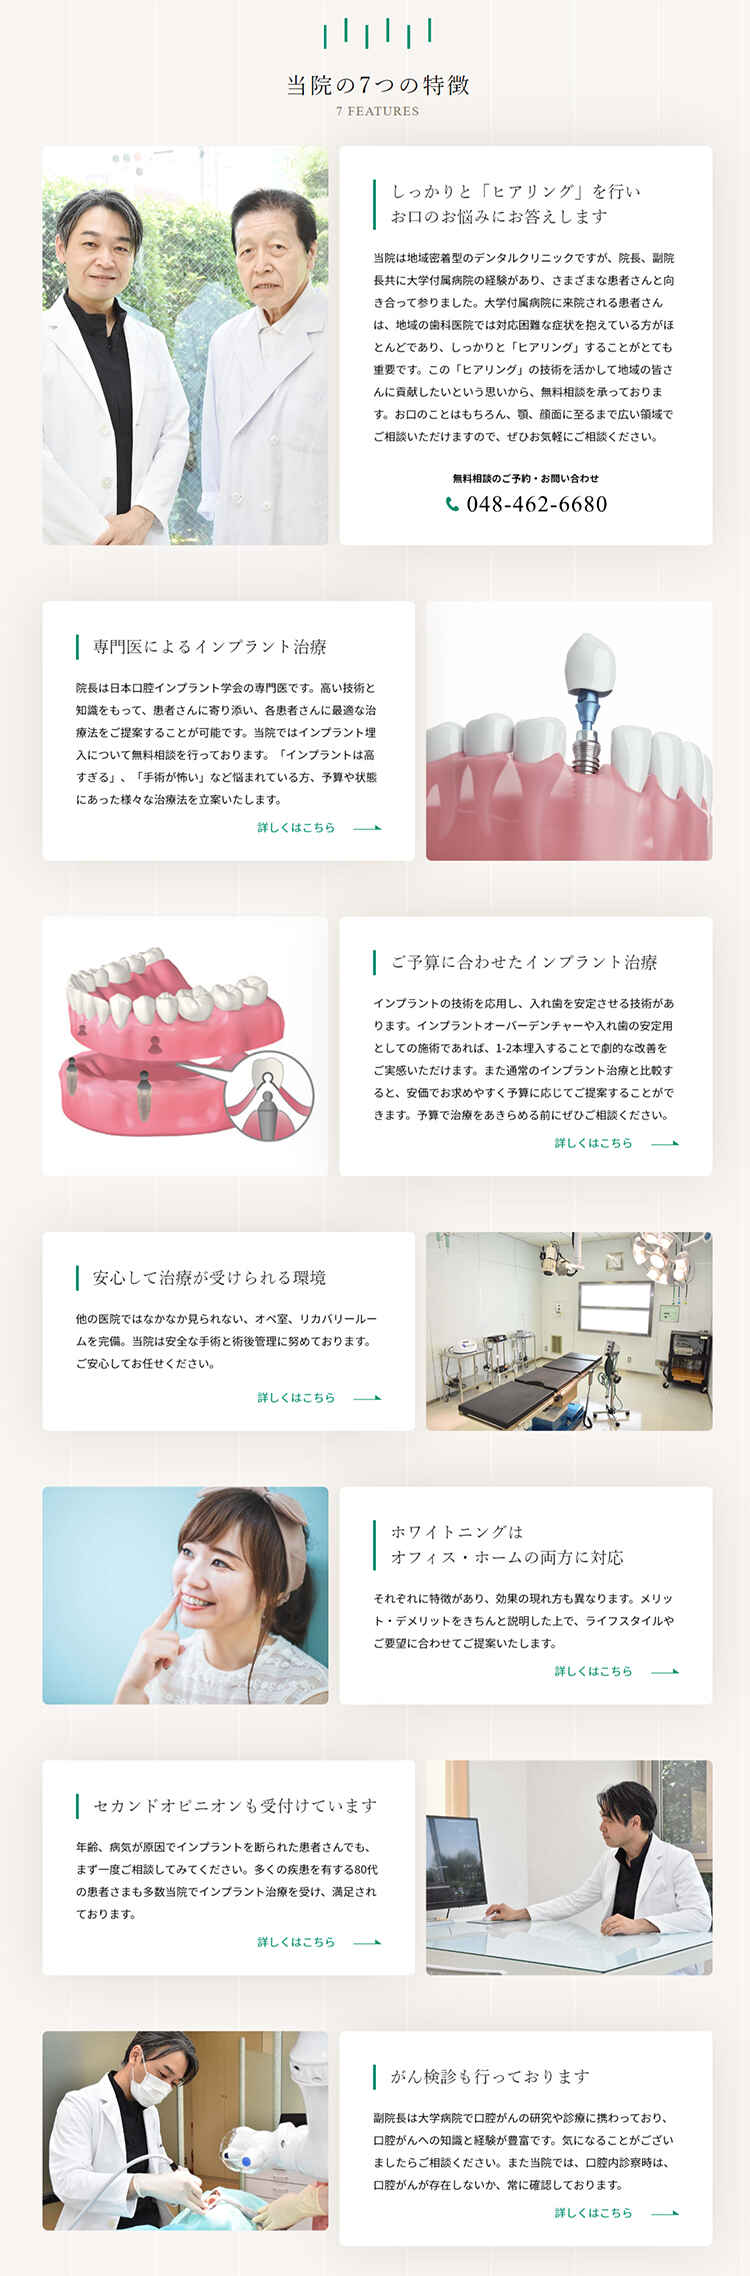 小沢歯科クリニックのお知らせ内容